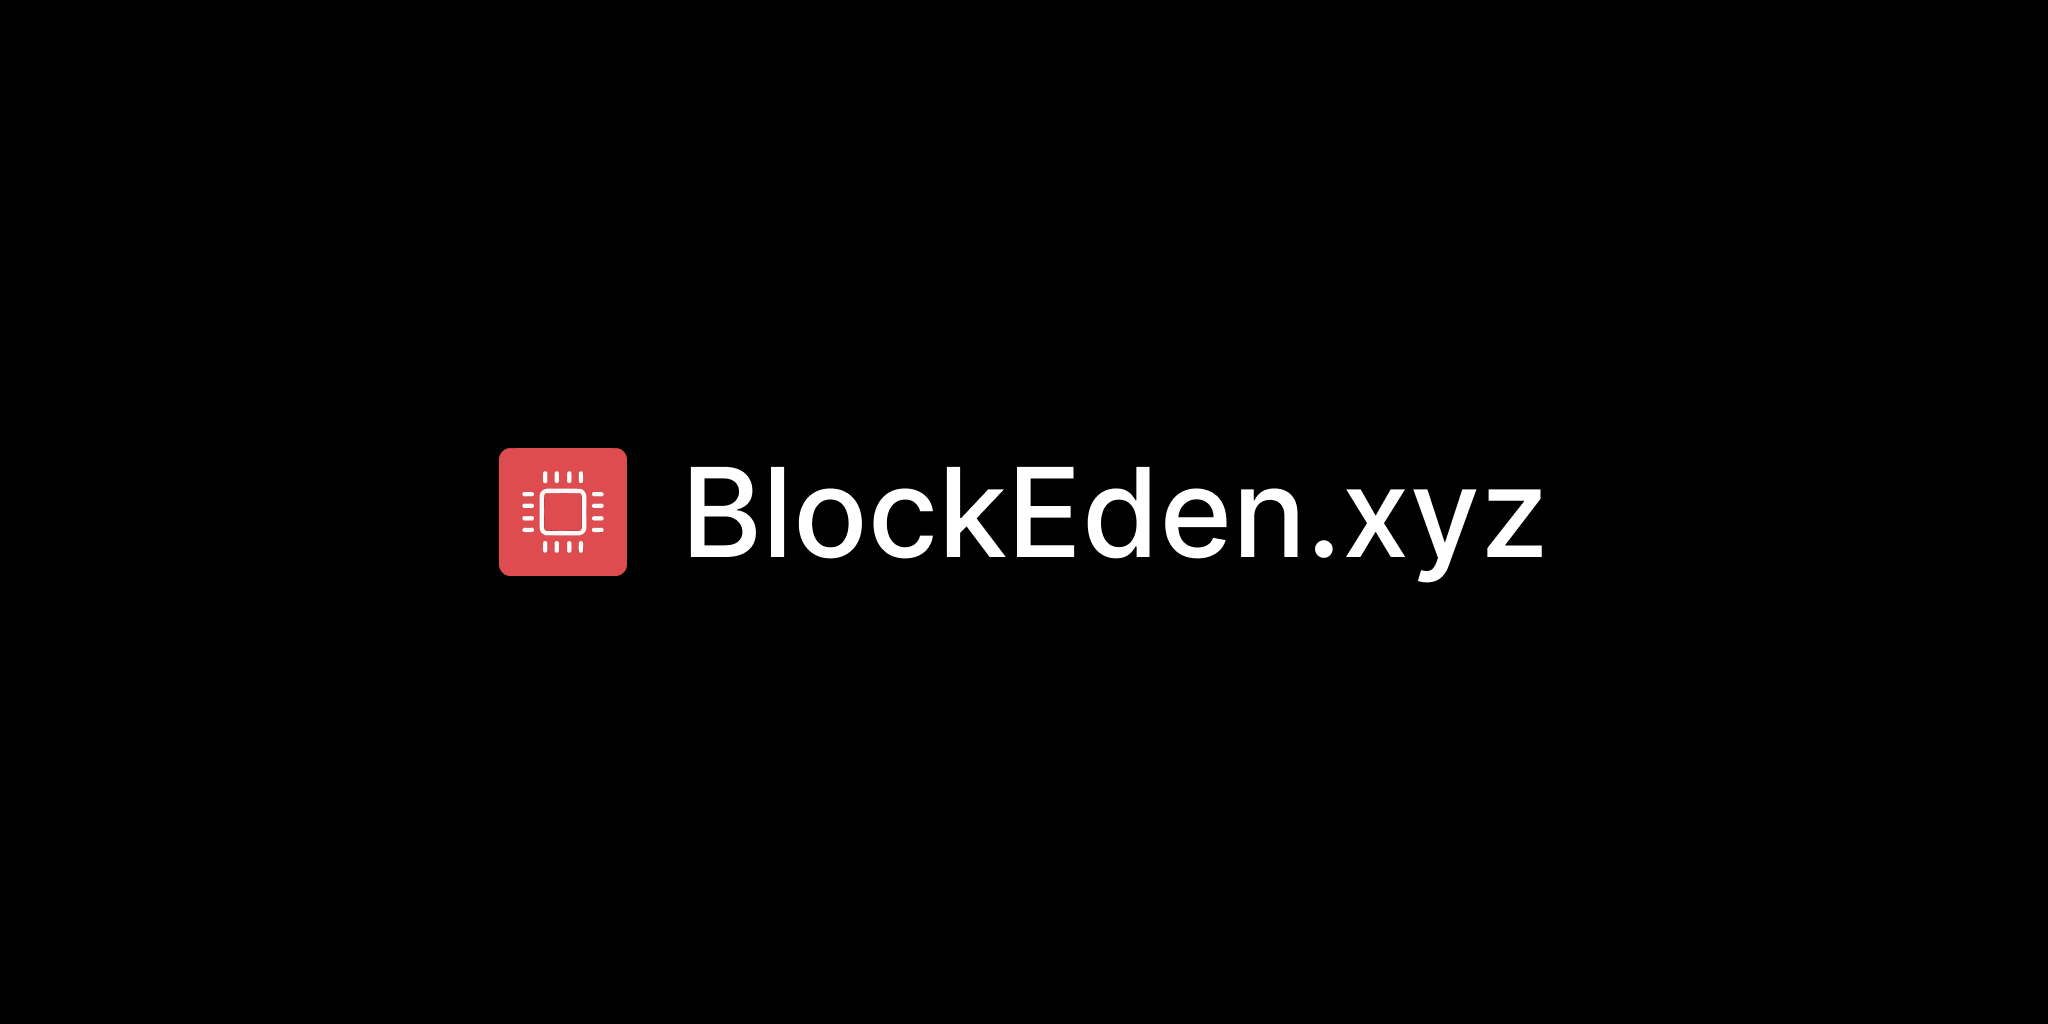 Genesis of BlockEden.xyz